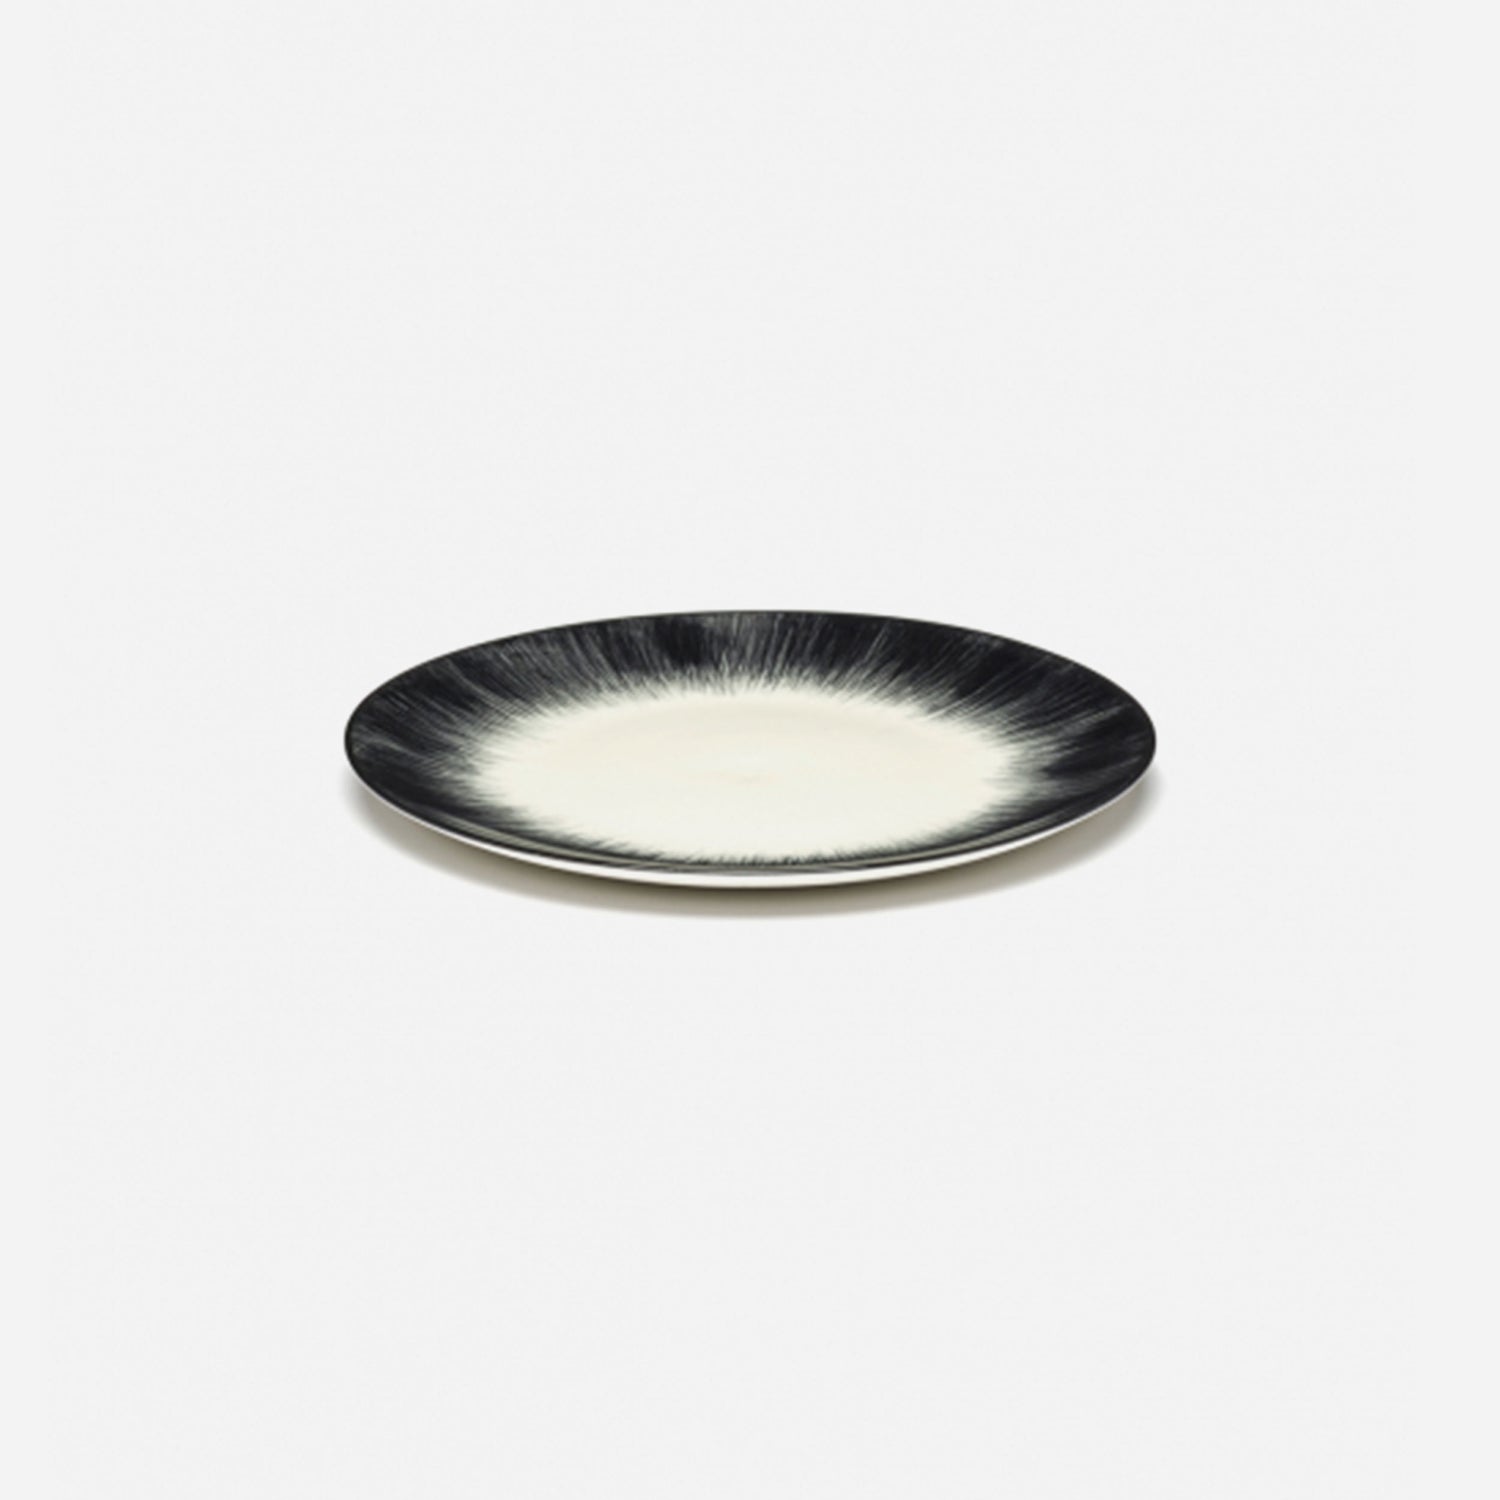 Plates Dé Off White/Black Var 4 D 17.5 cm - Set of 6